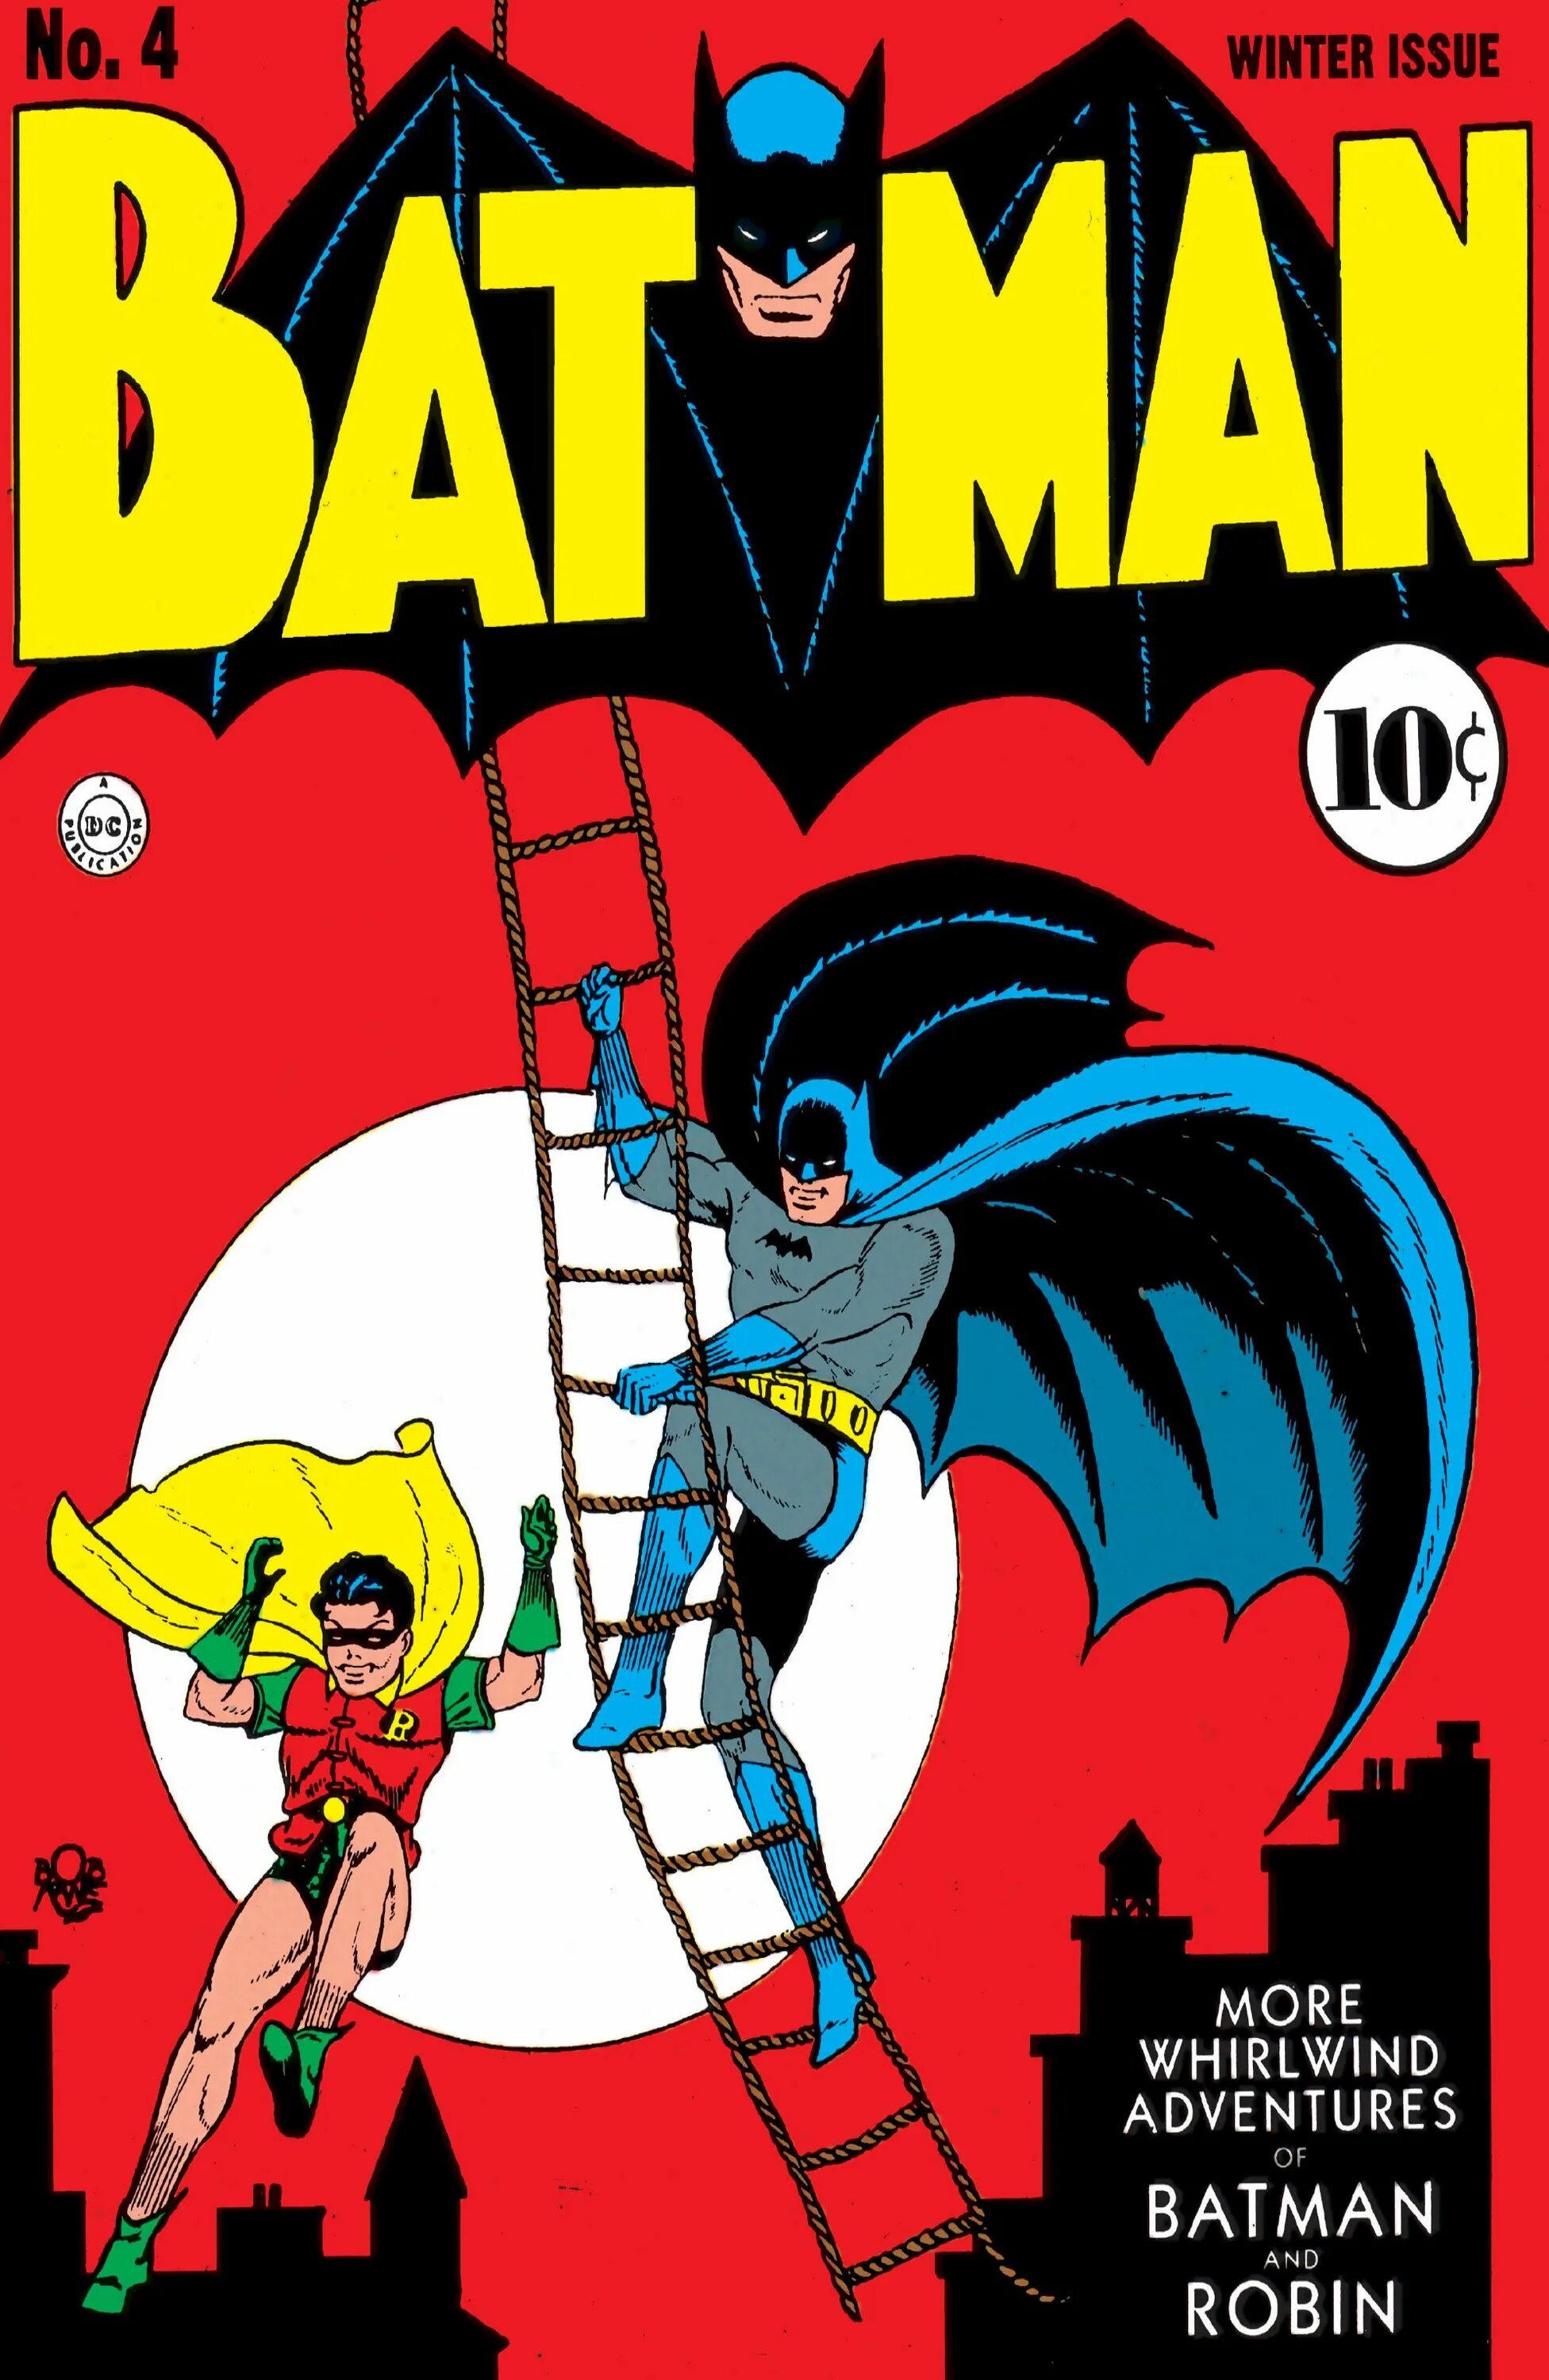 Бэтмен первый комикс. Batman 1940. Первый комикс с Бэтменом. Batman #1 (1940). Бэтмен первые комиксы